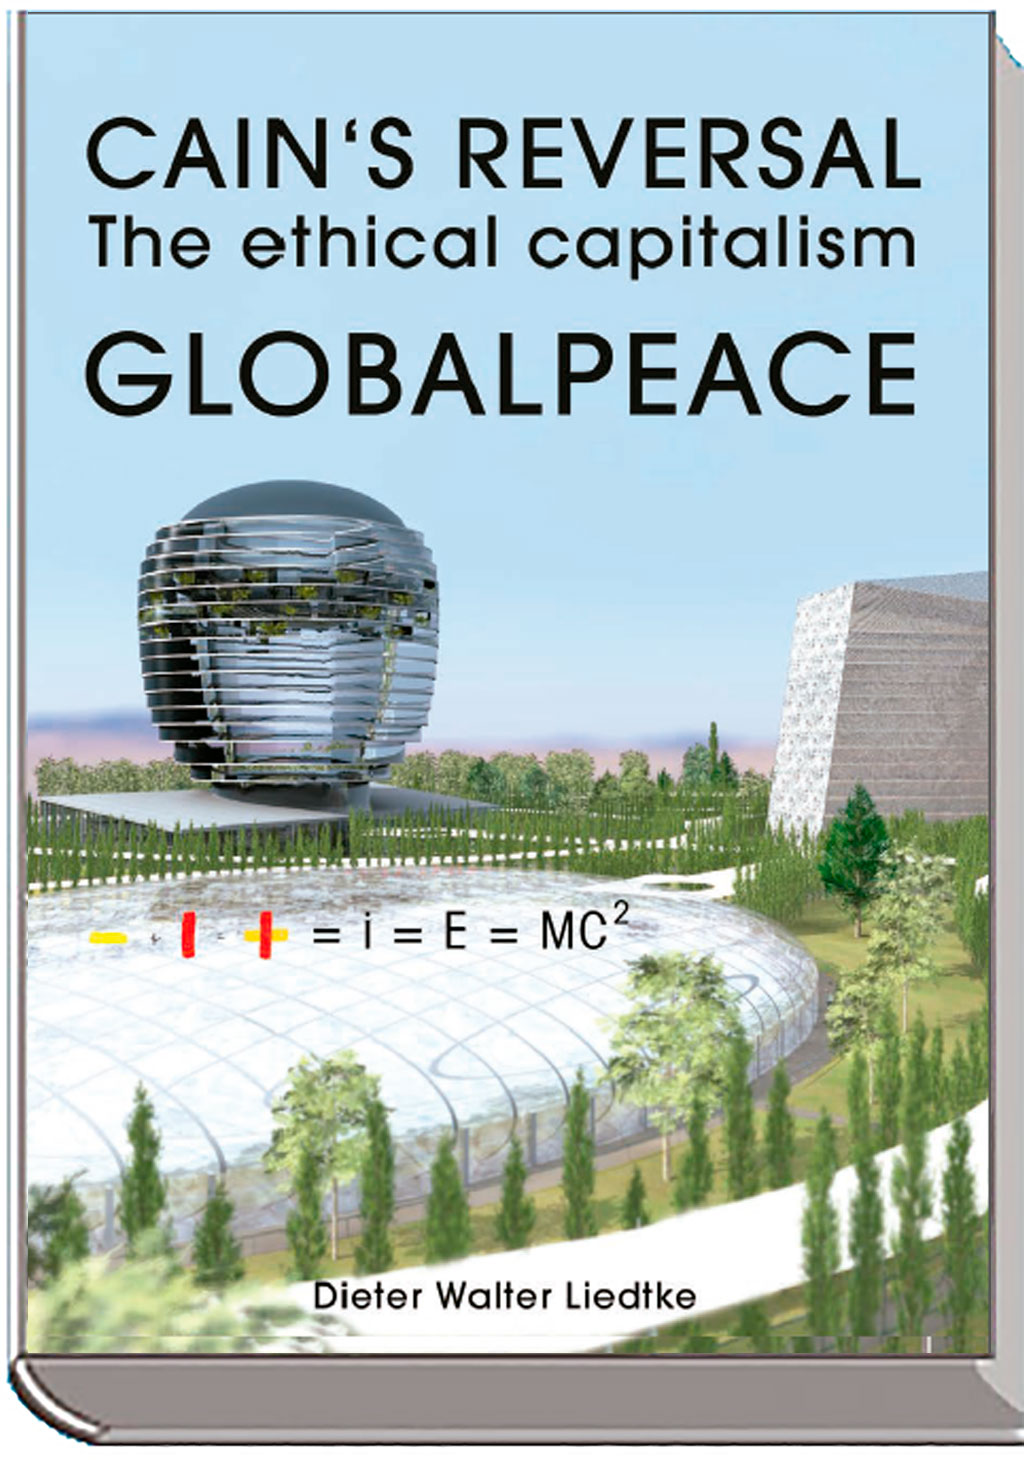 kains umkehr der ethische kapitalismus globalpeace